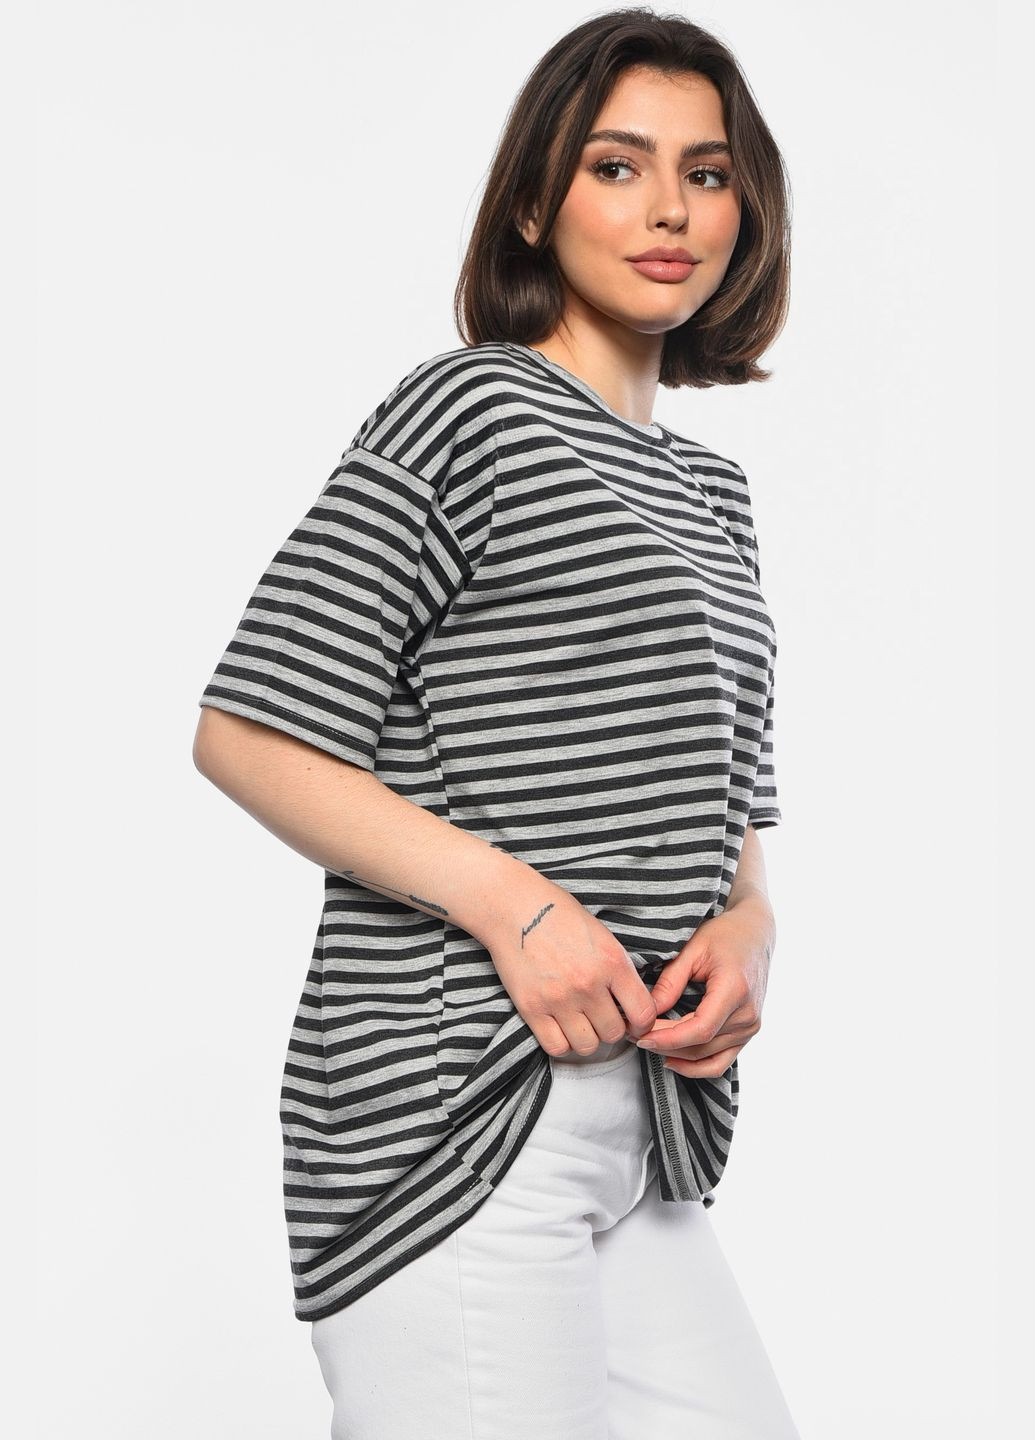 Серая летняя футболка женская полубатальная в полоску серого цвета Let's Shop